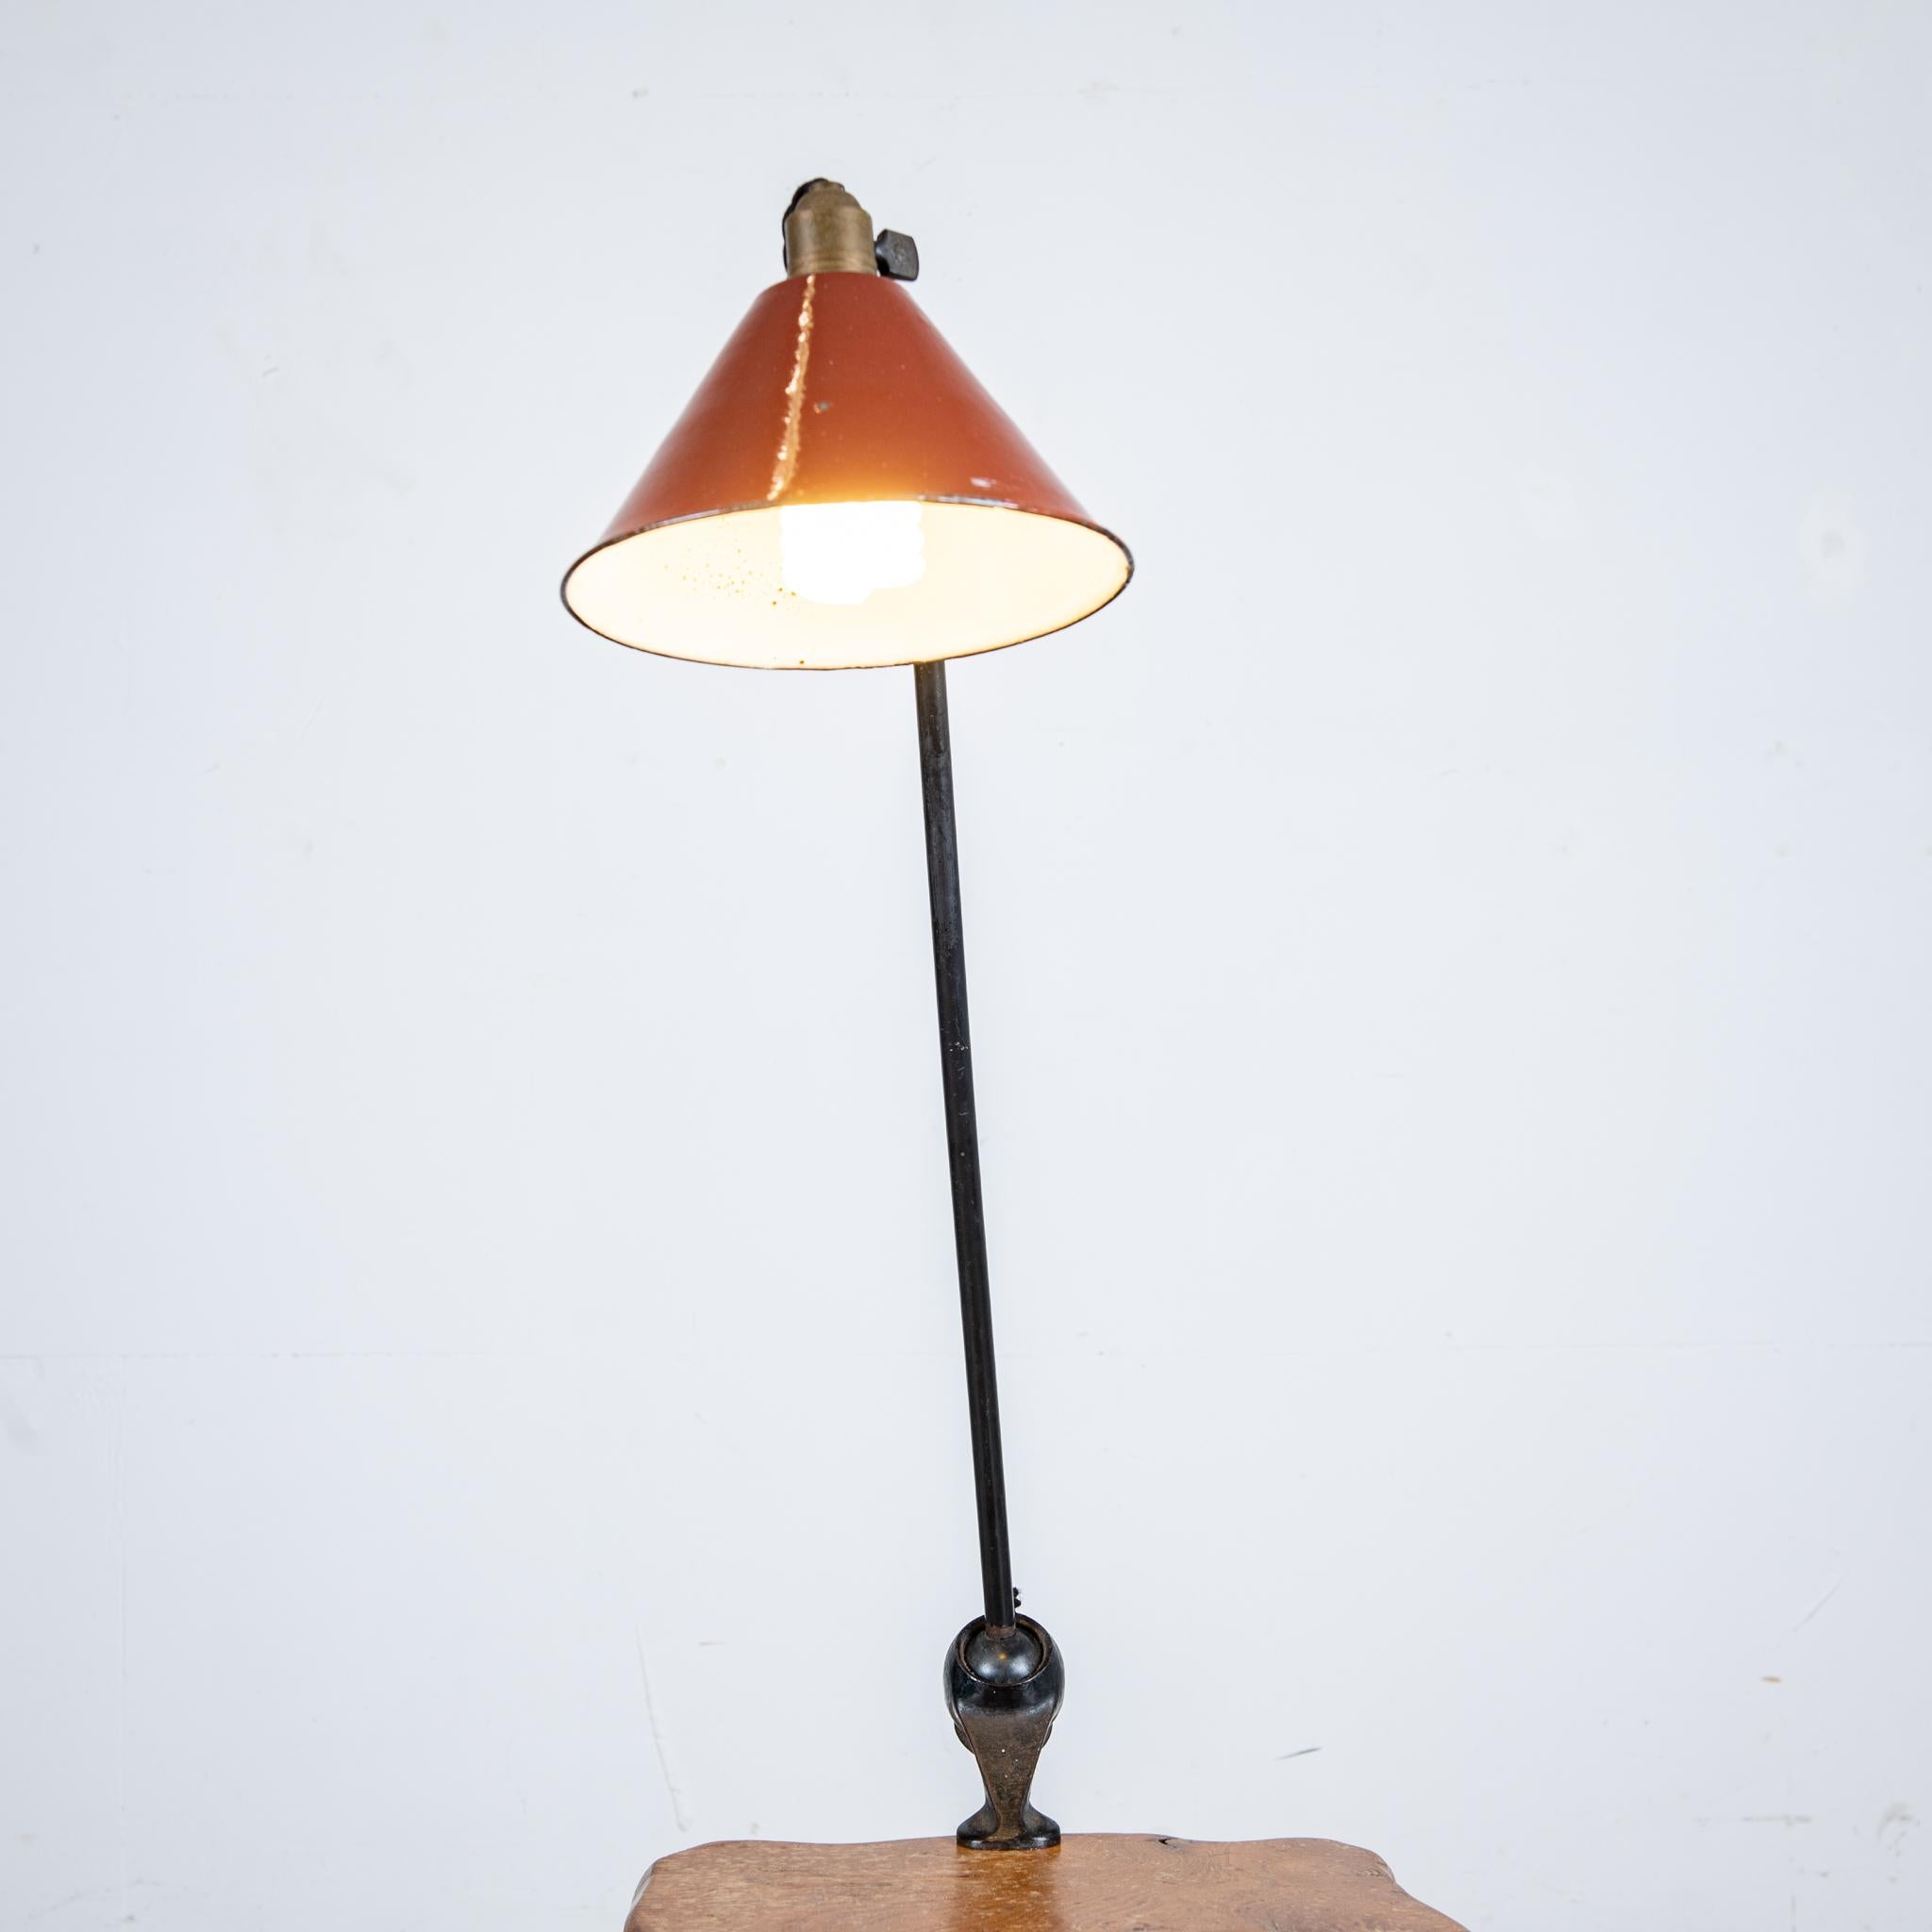 Lampe 201 Bernard-Albin Gras pour Ravel Clamart, 1921

Das Modell 201 ist dreifach an der Rotation an der Verbindung der beiden Bügel und auf der Höhe des Bodens gelenkig gelagert.

Höhe 70 cm Durchmesser abat-jour 22 cm